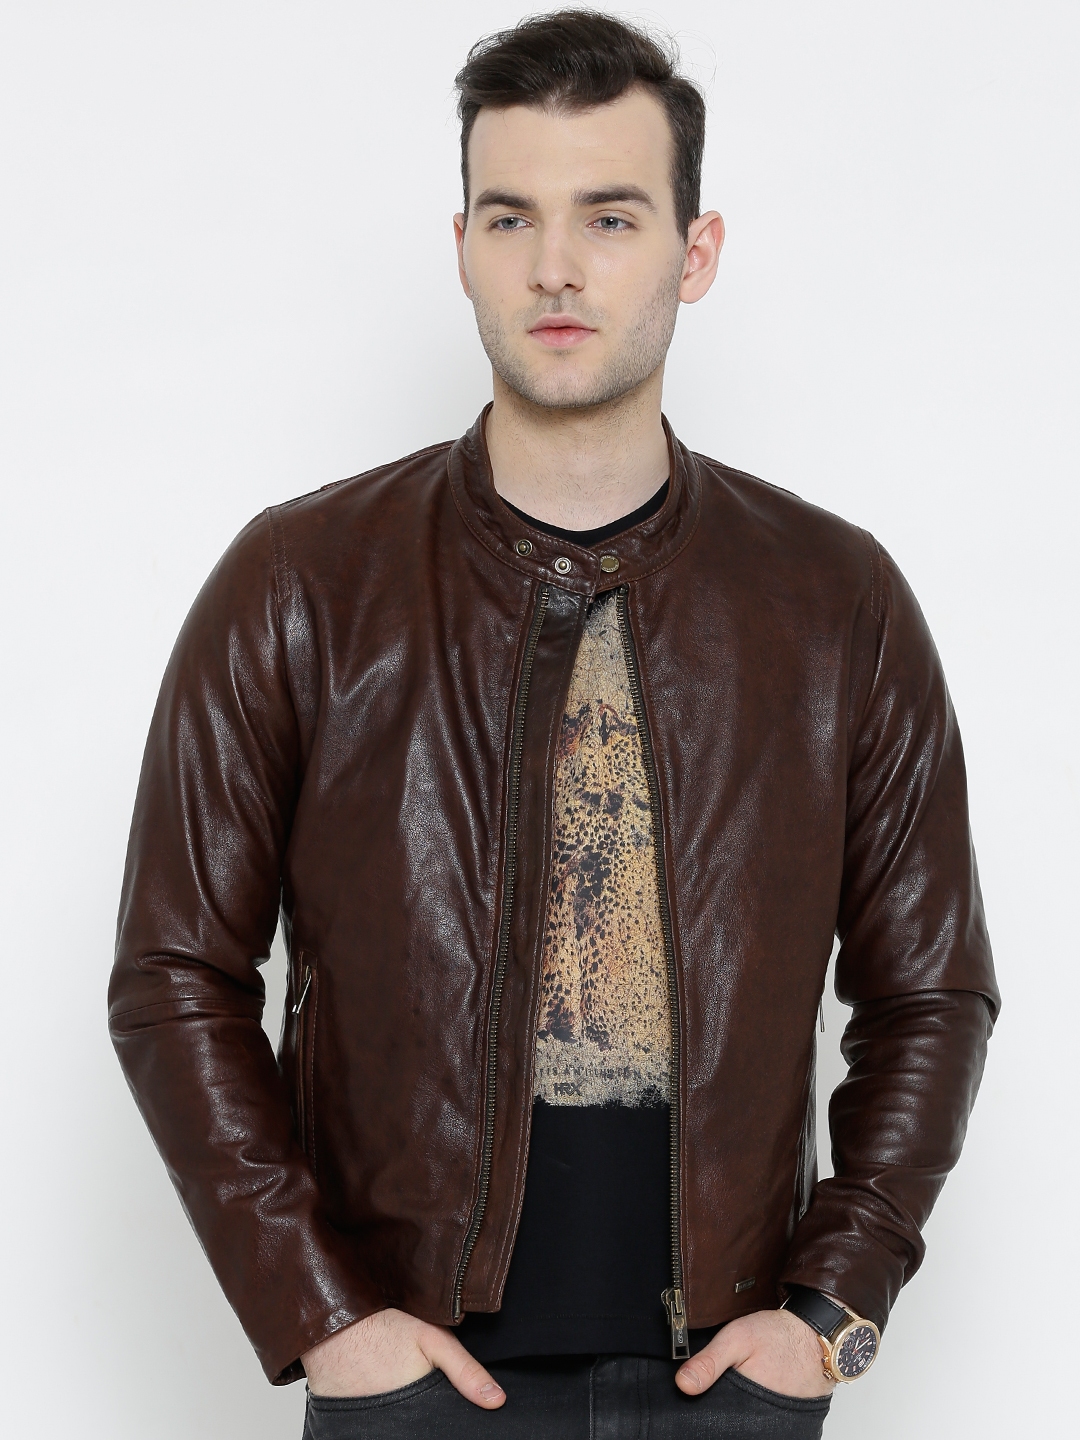 Buy BARESKIN Brown Leather Jacket - Jackets for Men 1139741 | Myntra